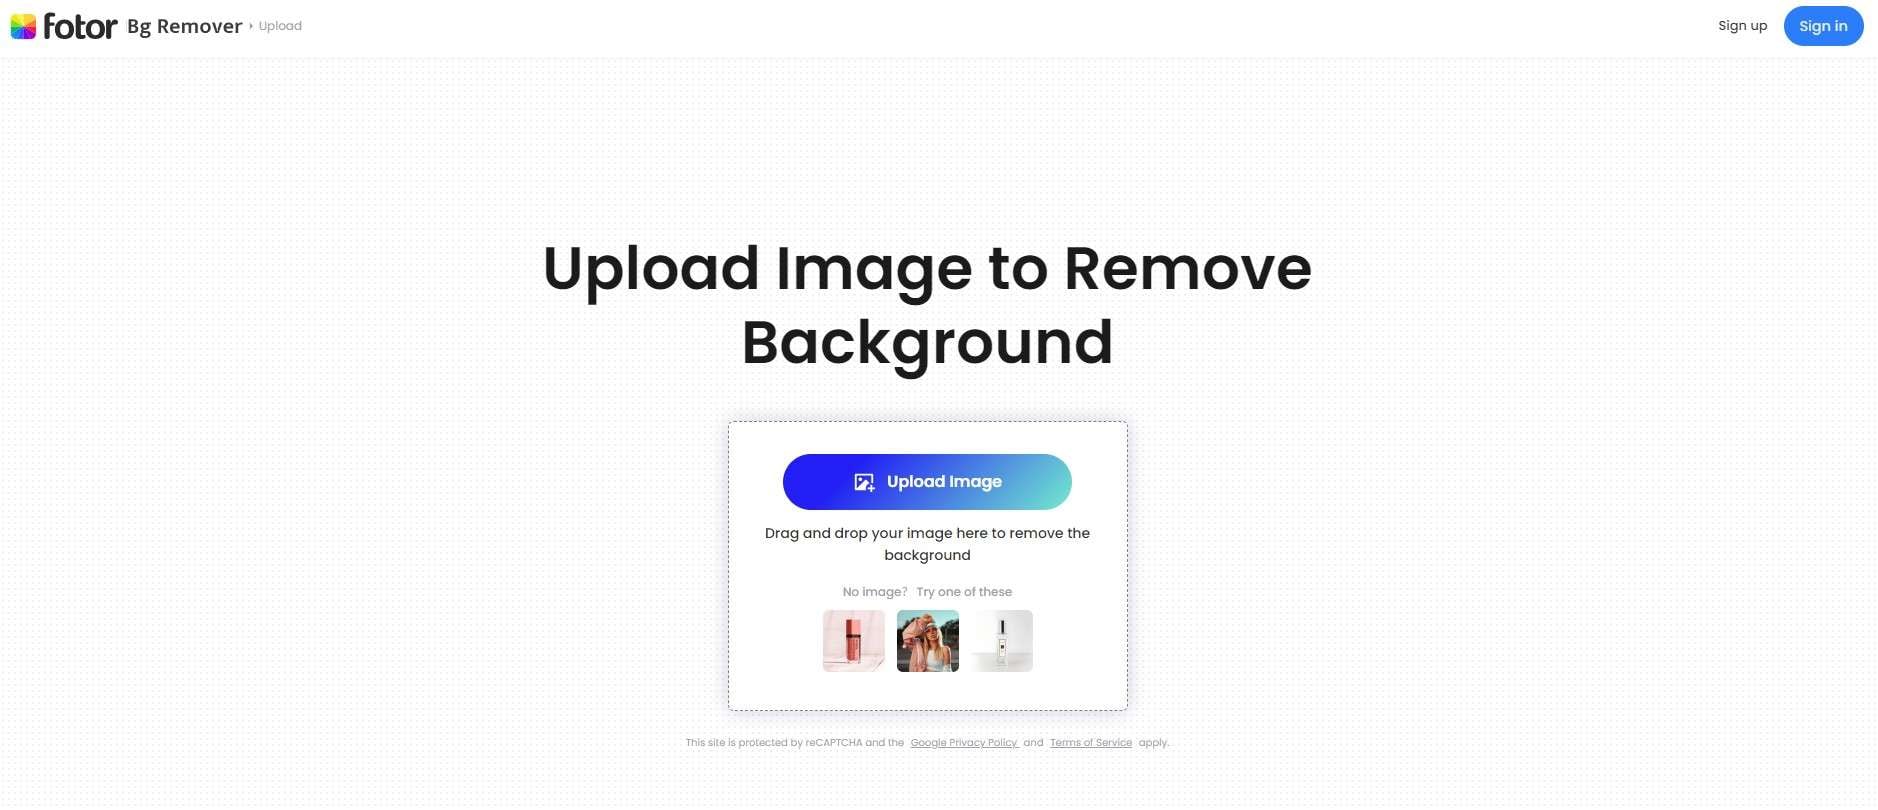 download transparent background image in fotor